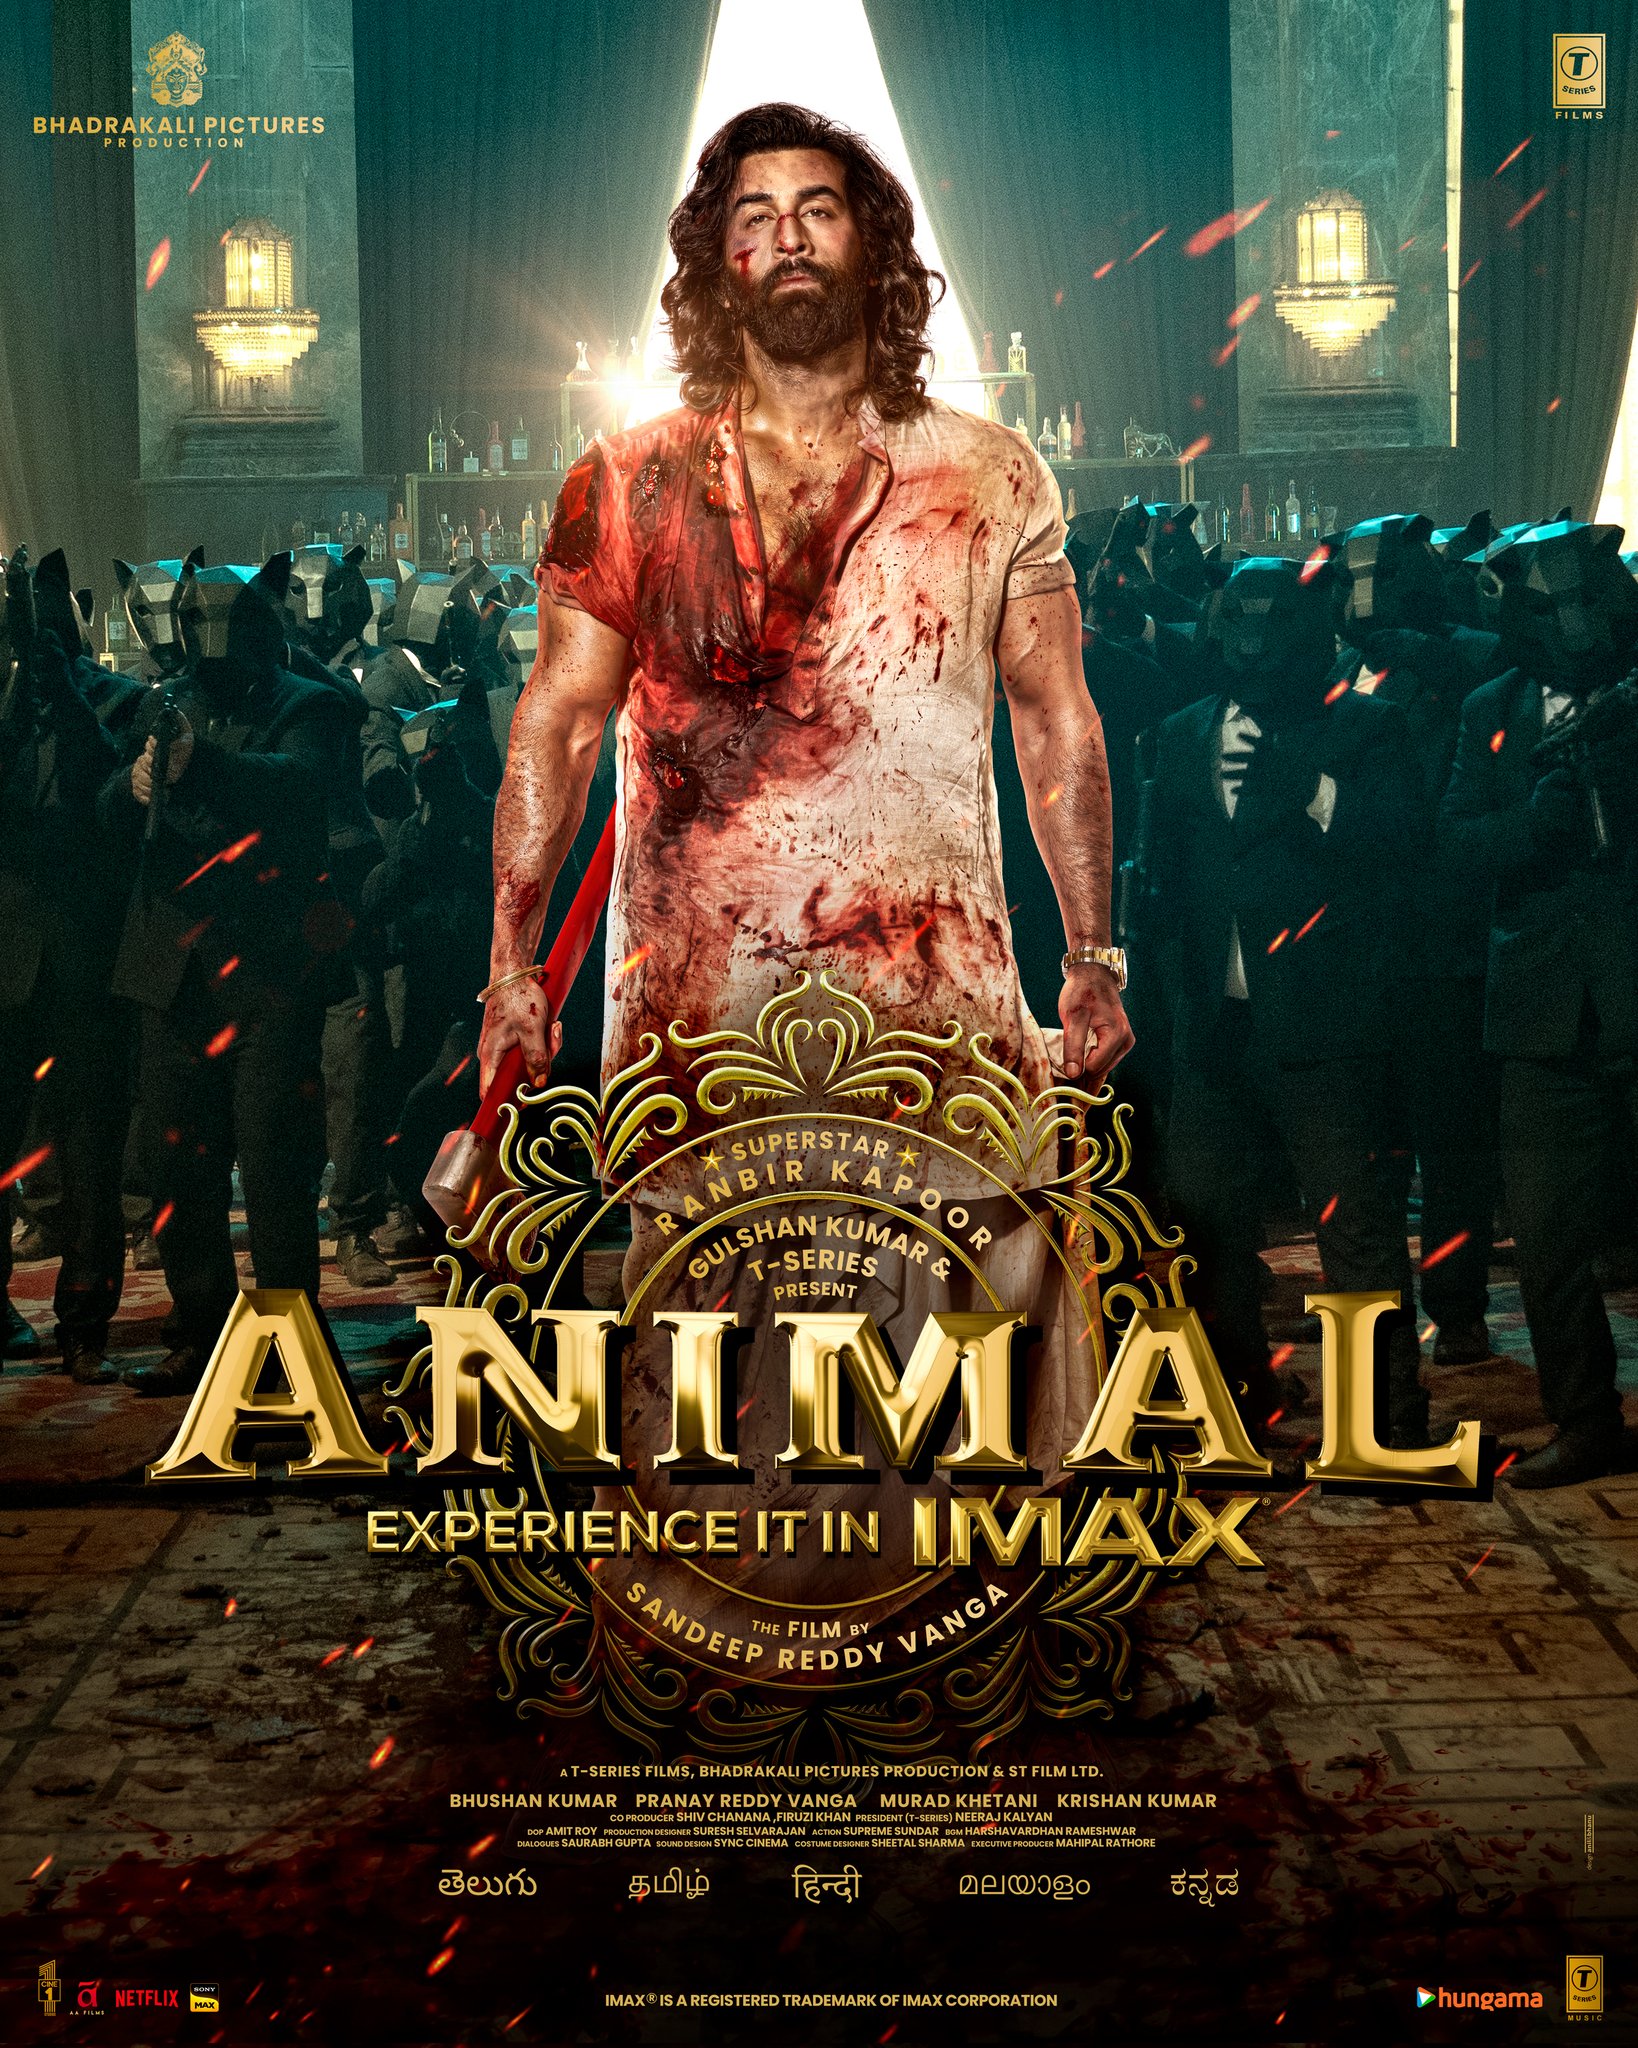 Animal Movie Trailer